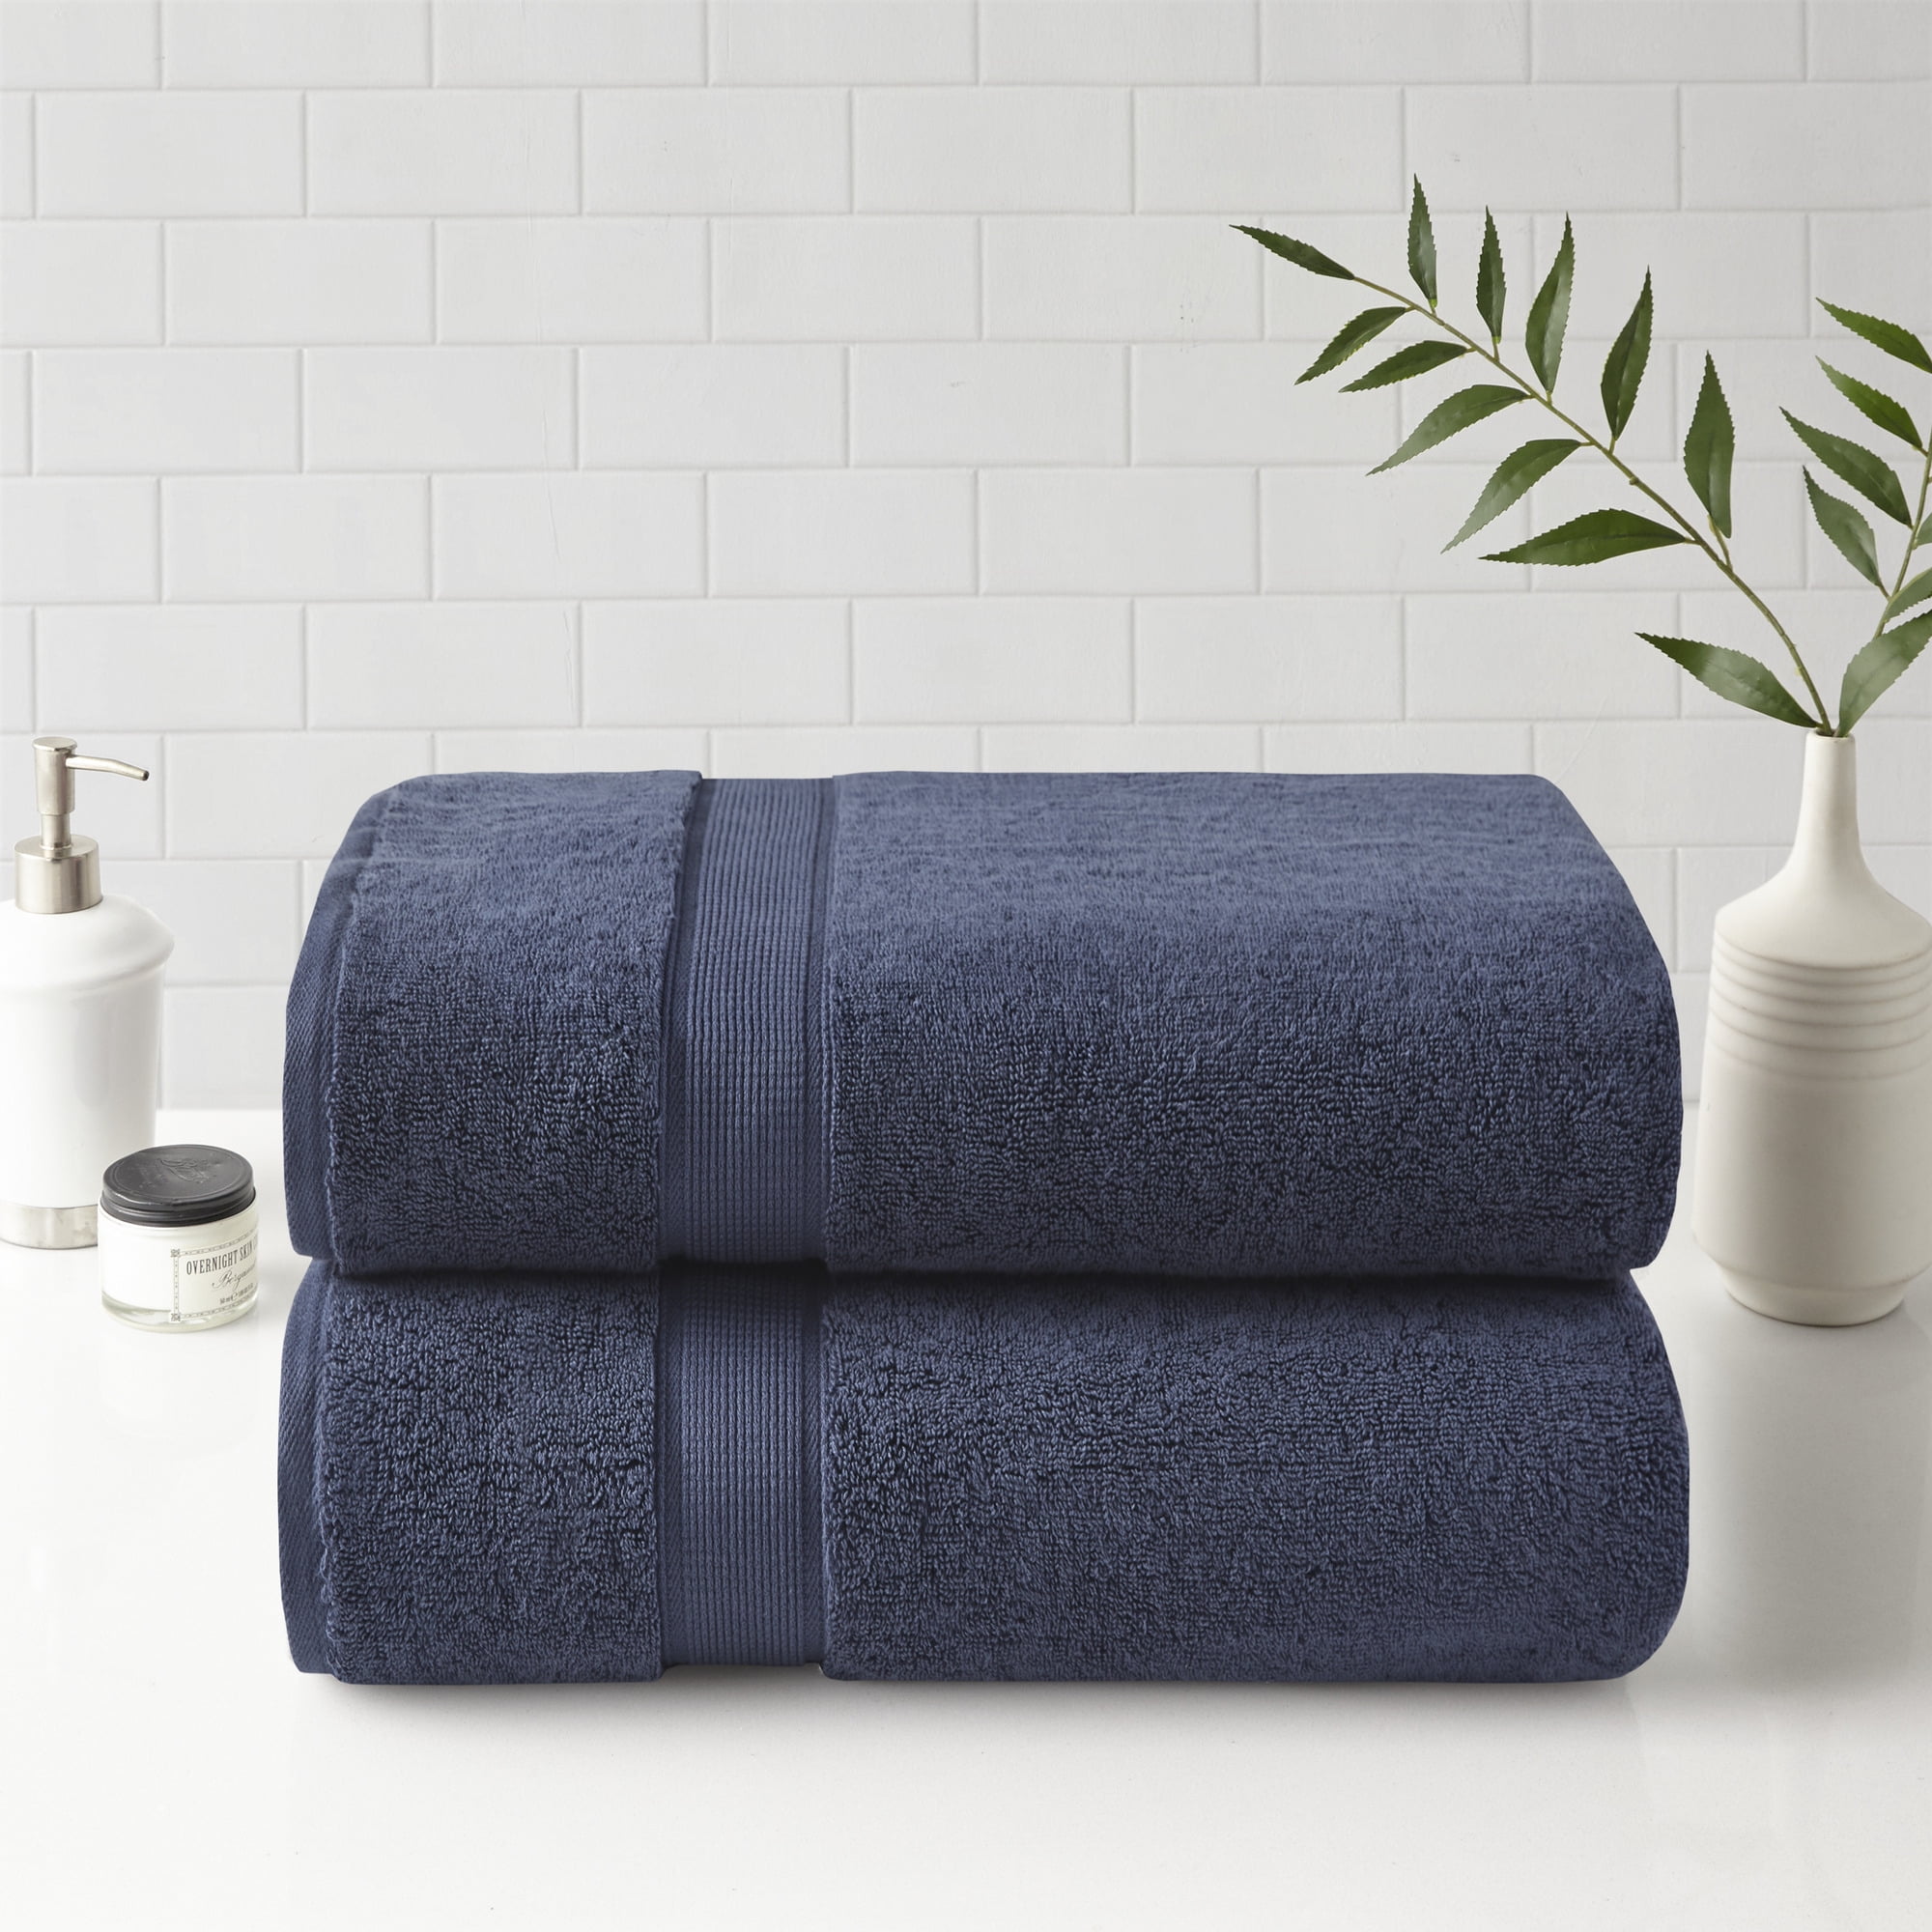 Paimpol pure cotton bath sheet La Redoute Interieurs